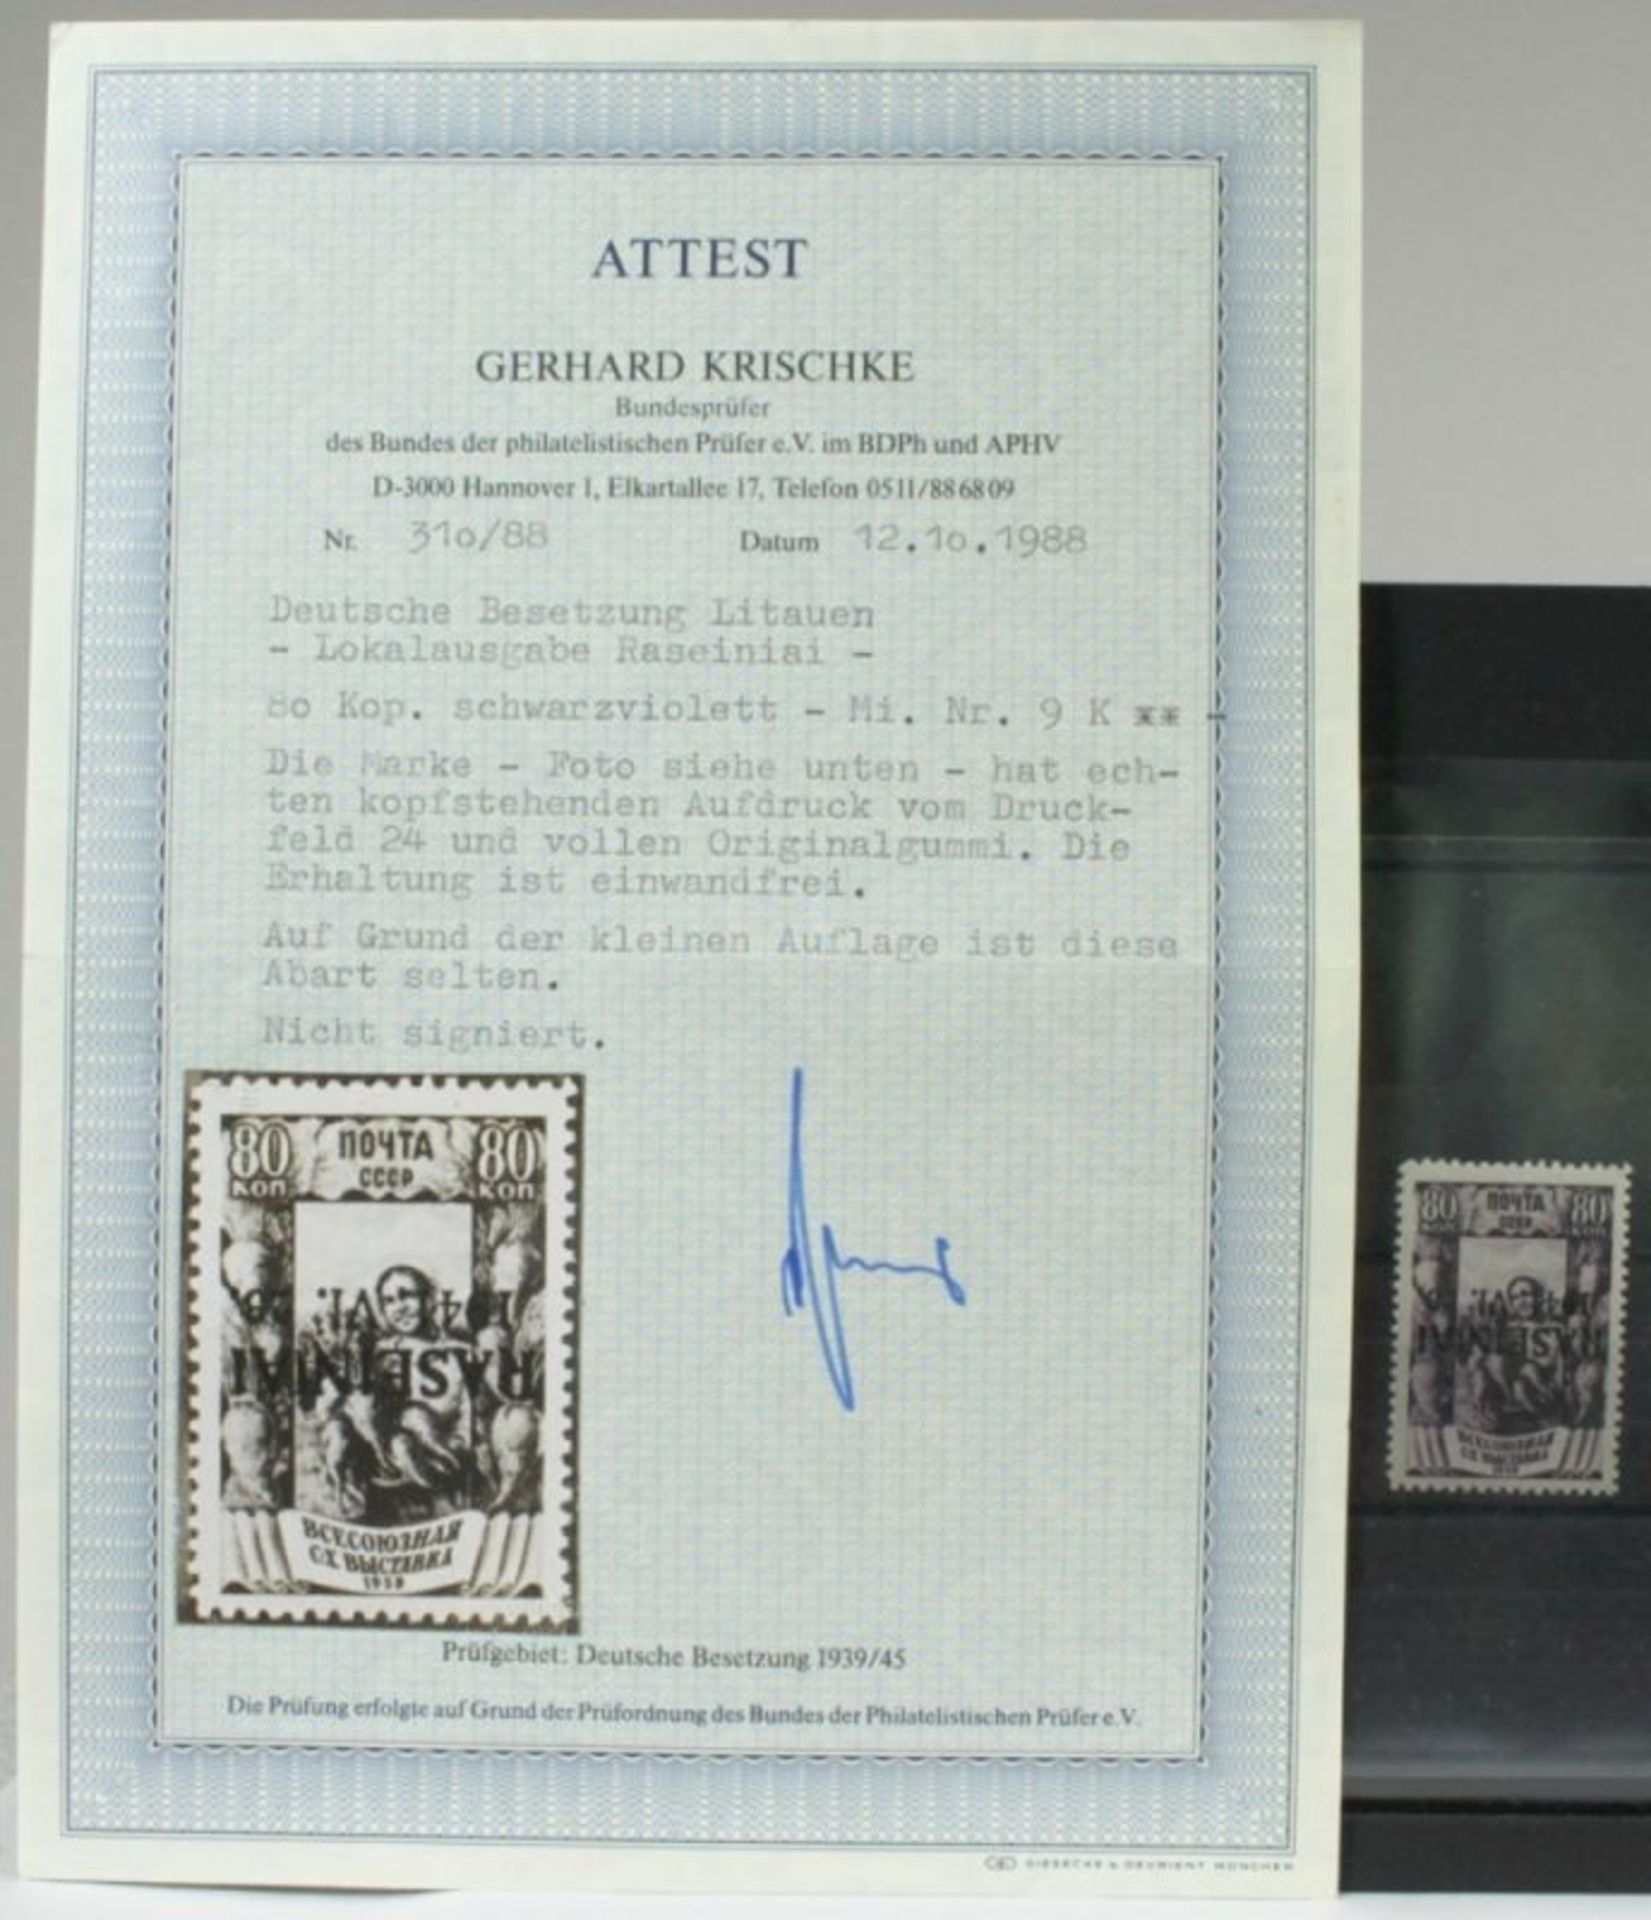 Deutsche Besetzungsausgaben, Litauen/Rossingen, Michel-Nr. 9 K, postfrisch, mitFotoattest,